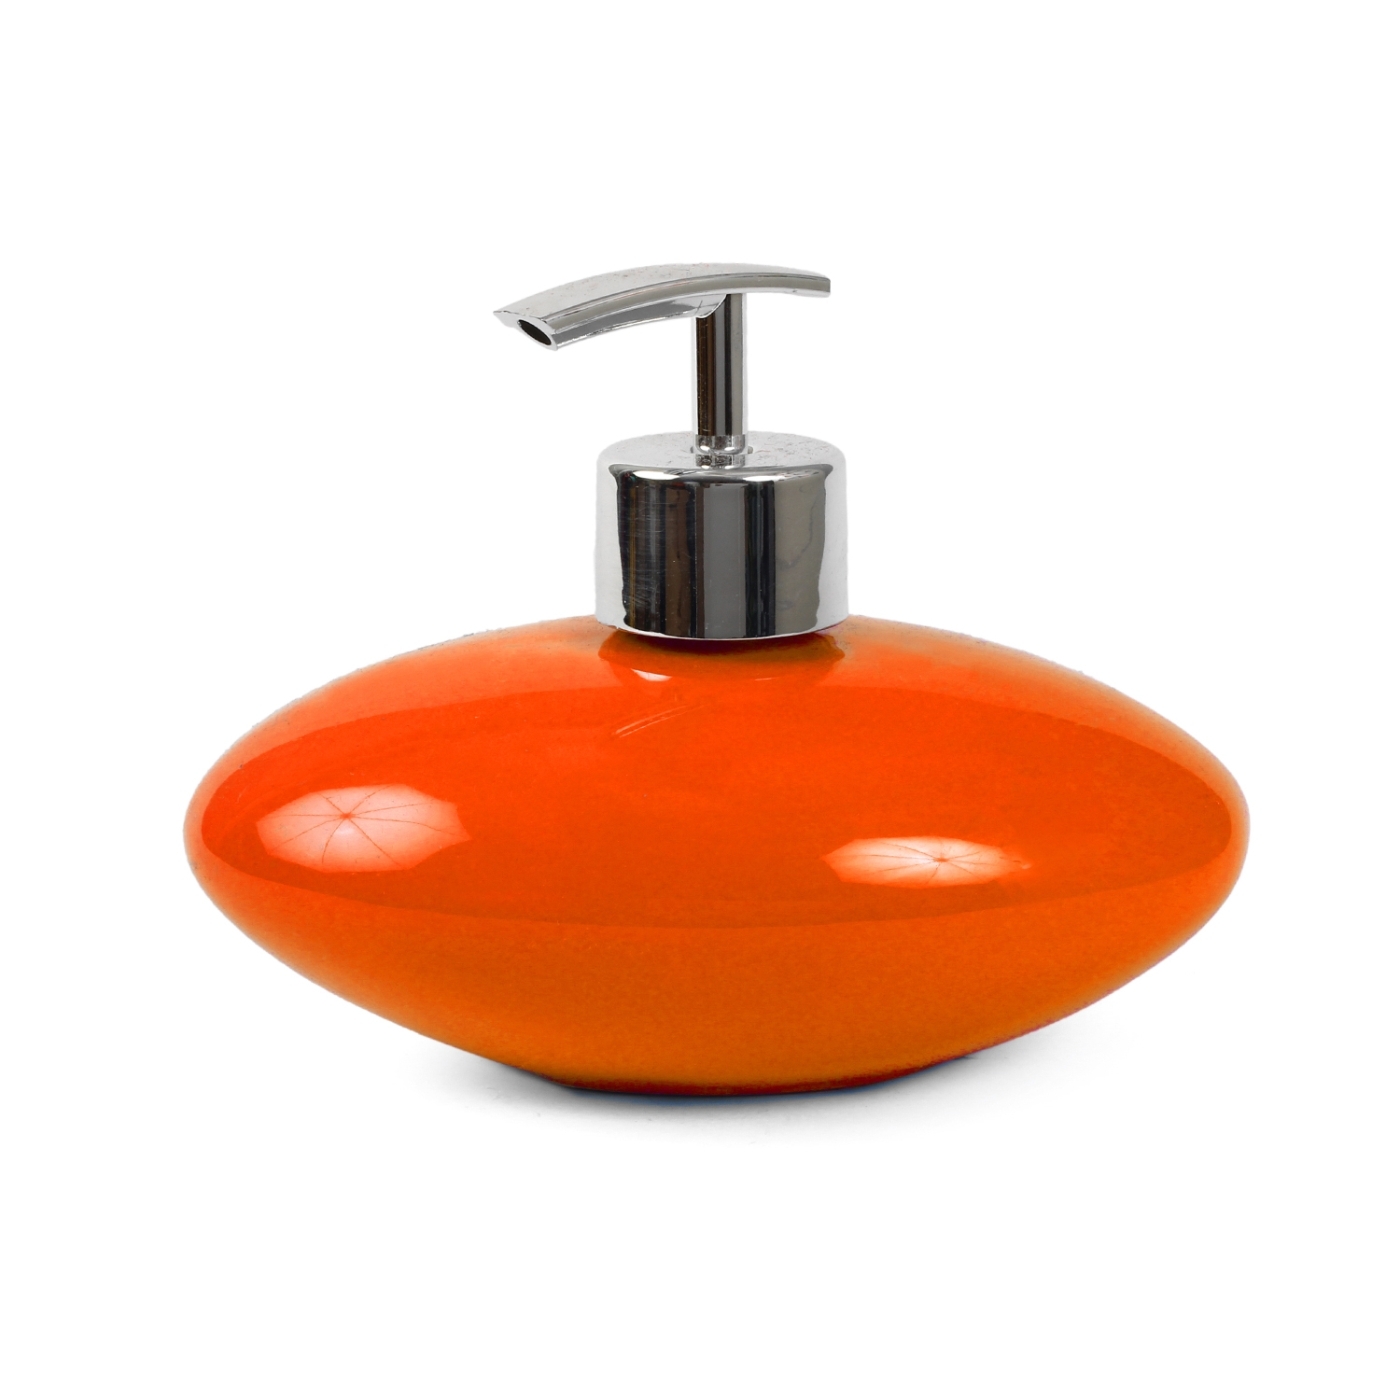 ORKA HOME Oval Soap Dispenser - Orange  